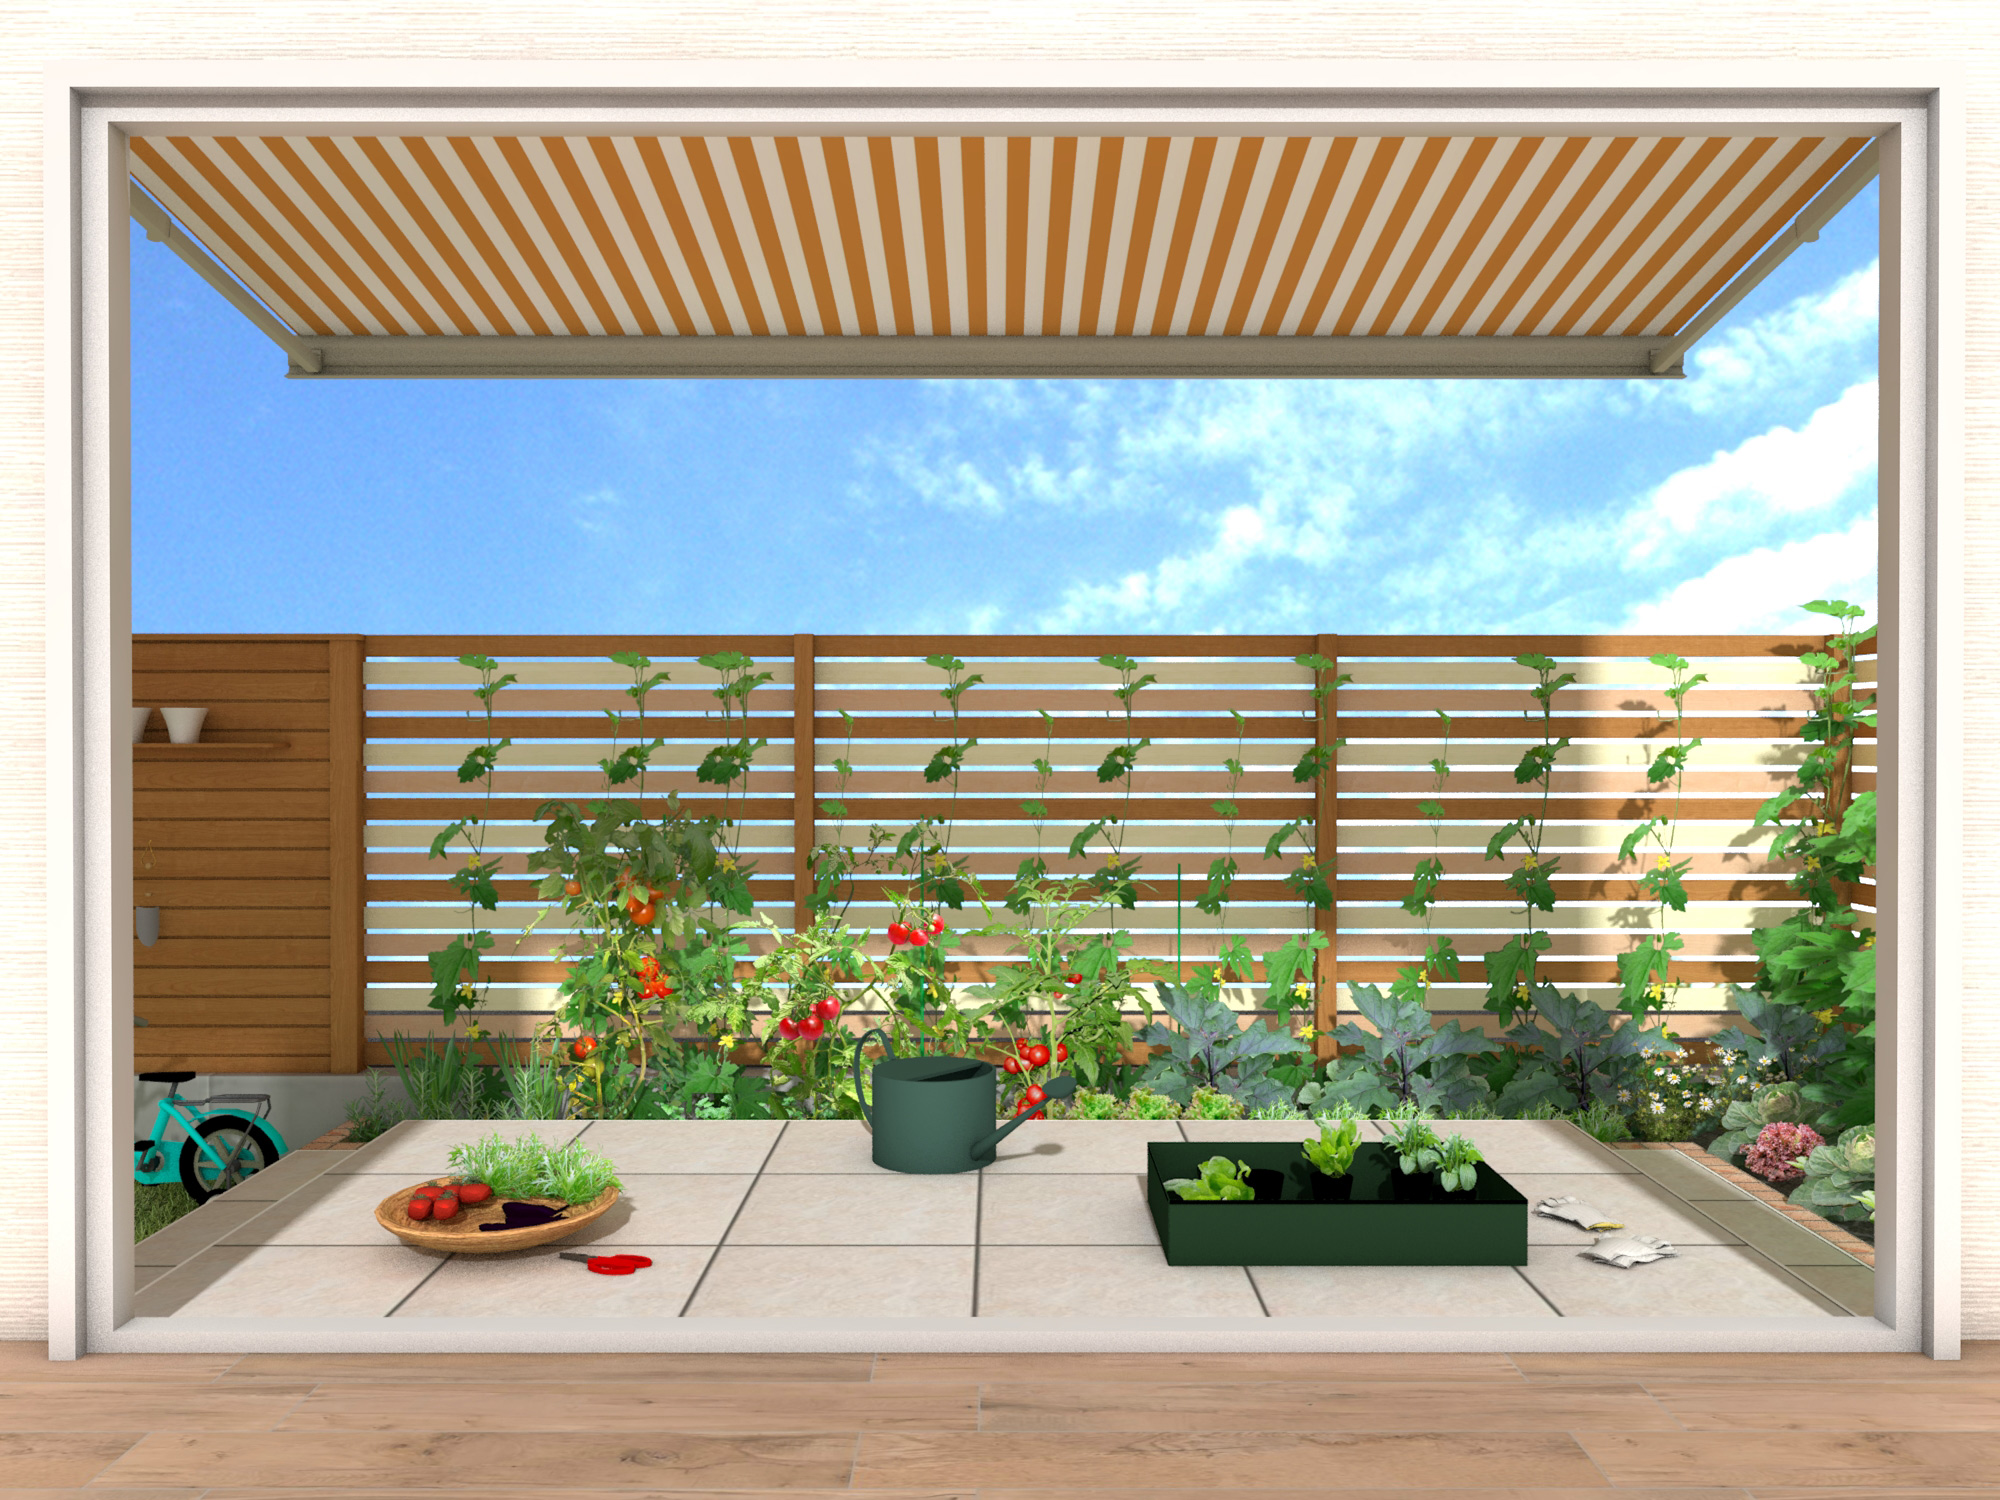 子どもと楽しめる 憧れの家庭菜園 エクスプラット エクステリア ガーデンデザイン プラン検索サイト Rikcadデータ無料配信